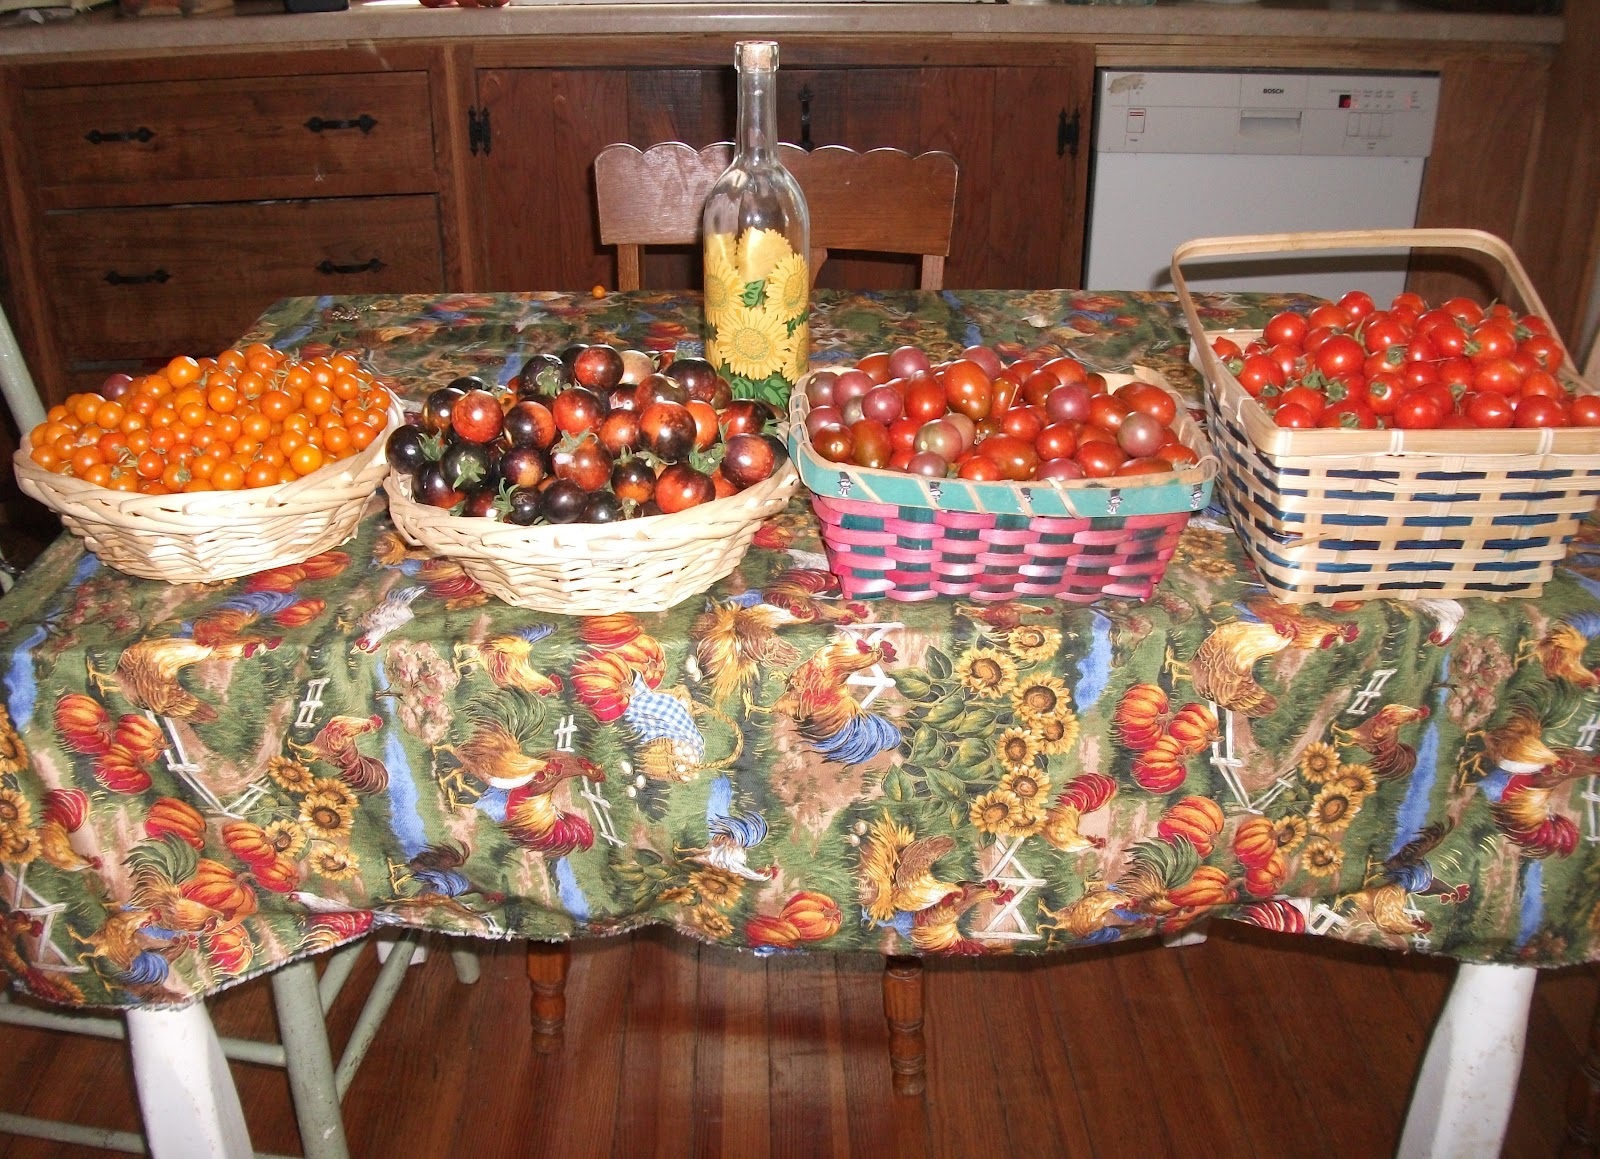 Tomato variety